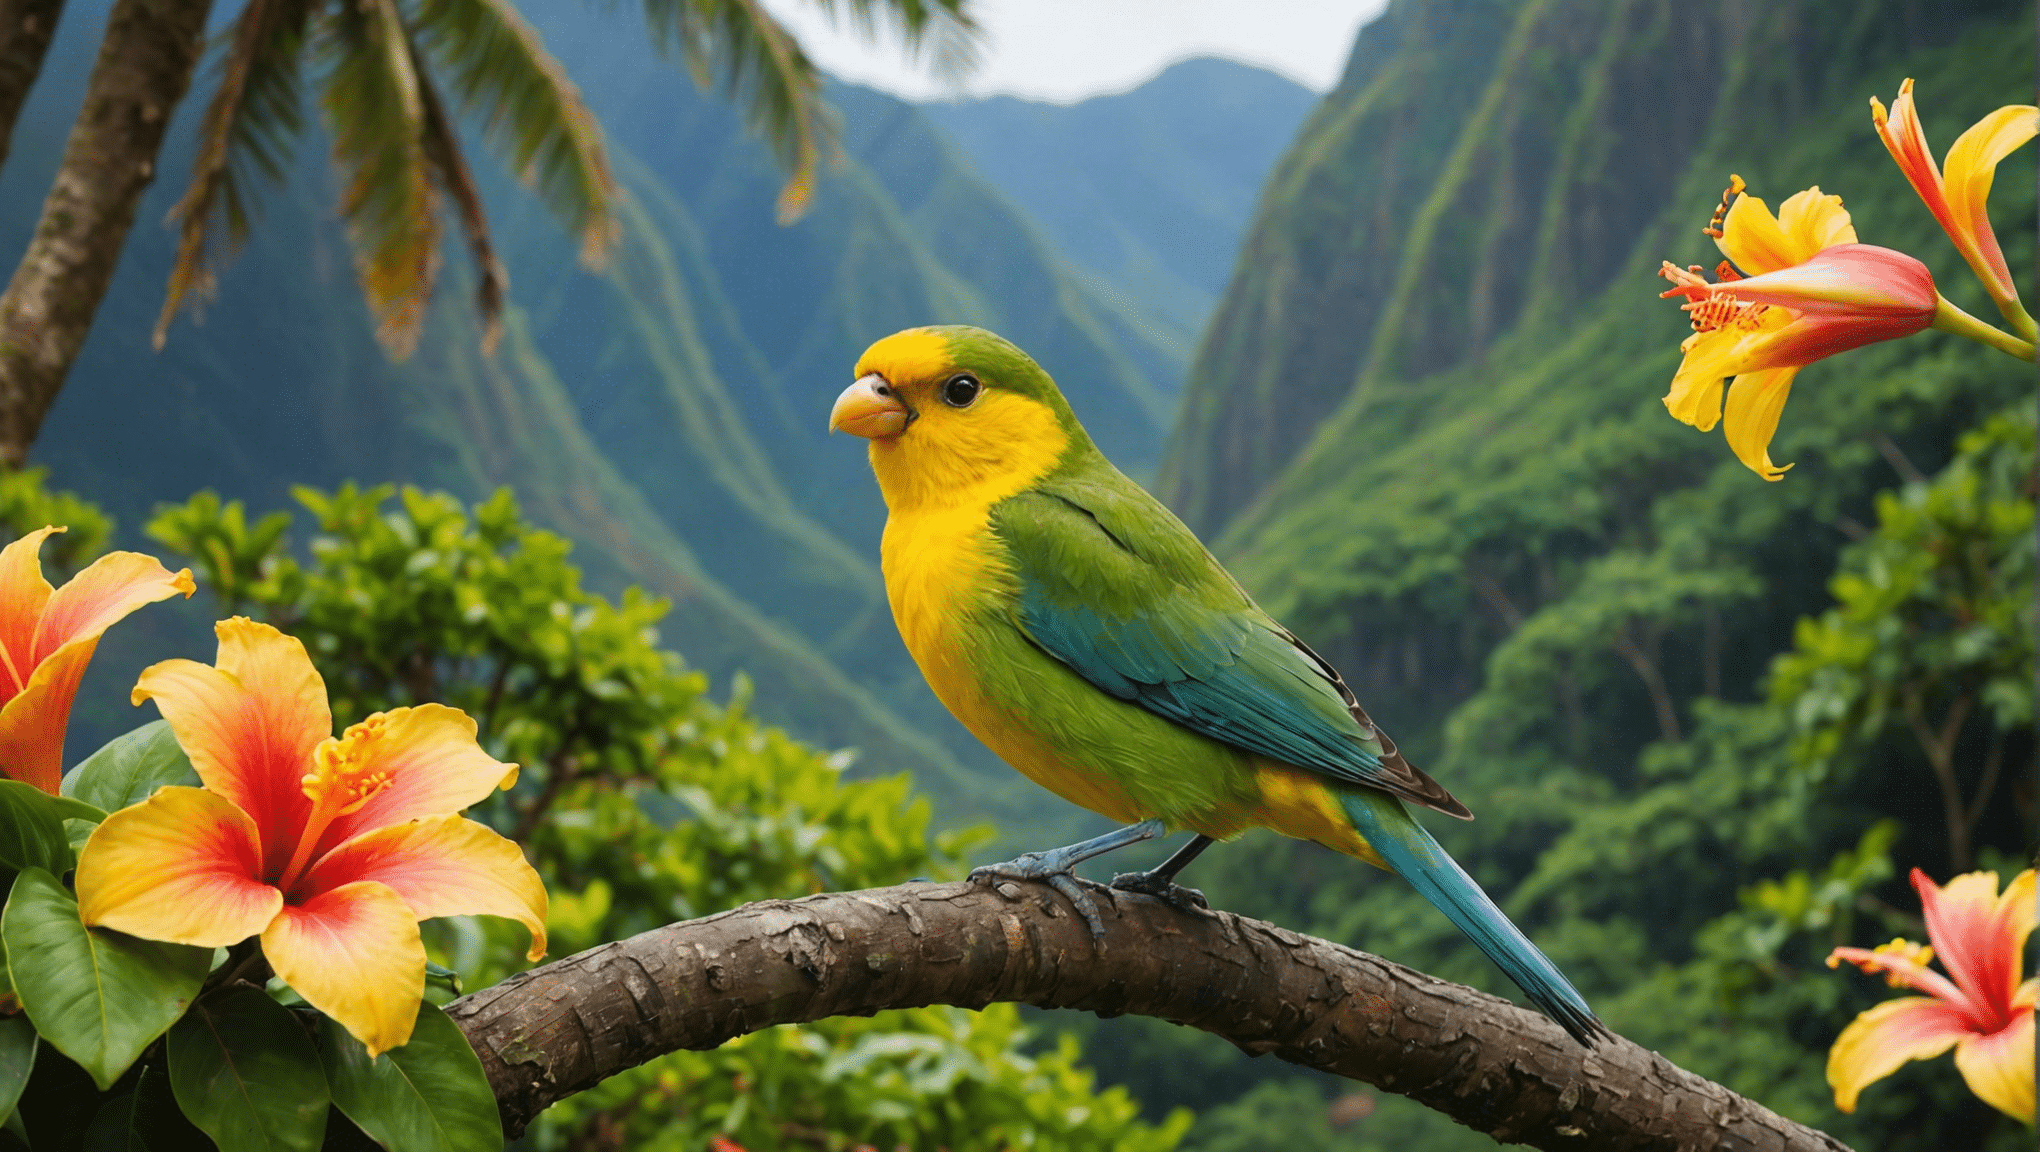 descubra as distintas espécies de aves do Havaí e suas características fascinantes. explore a fauna aviária única desta ilha paradisíaca.